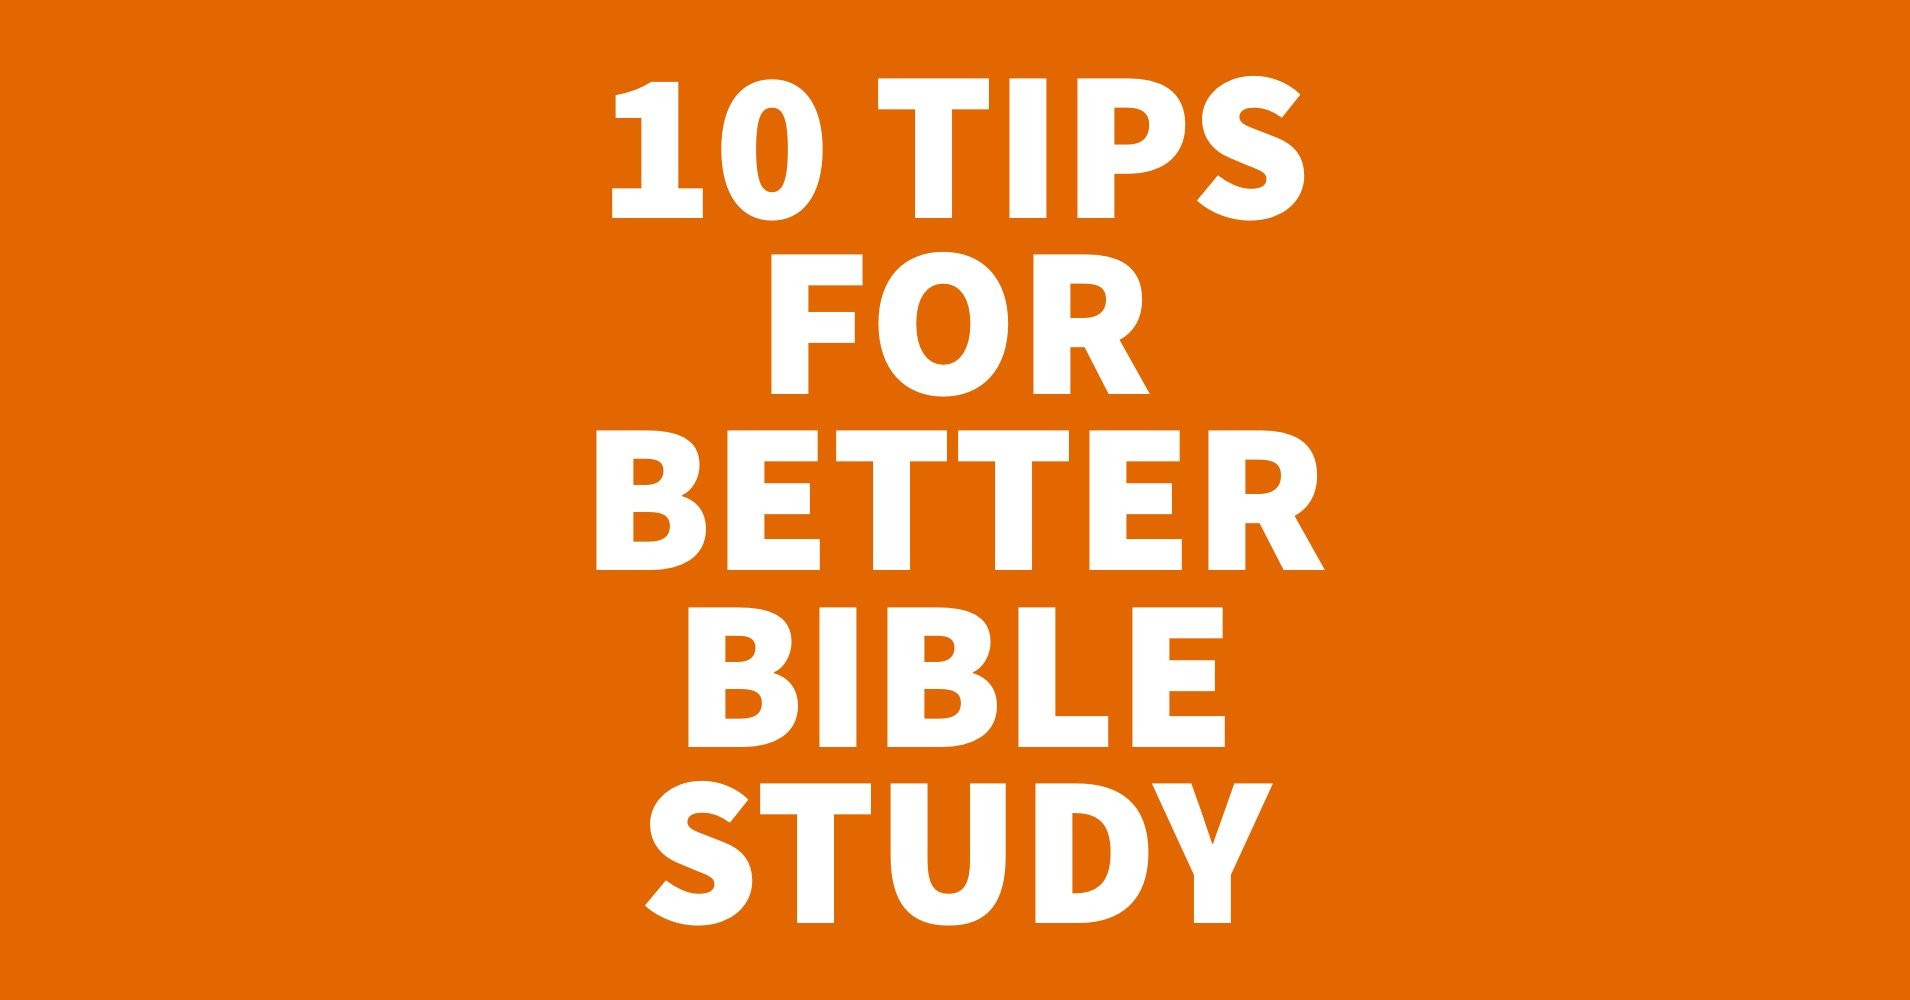 10 Tips for Better Bible Study.jpg